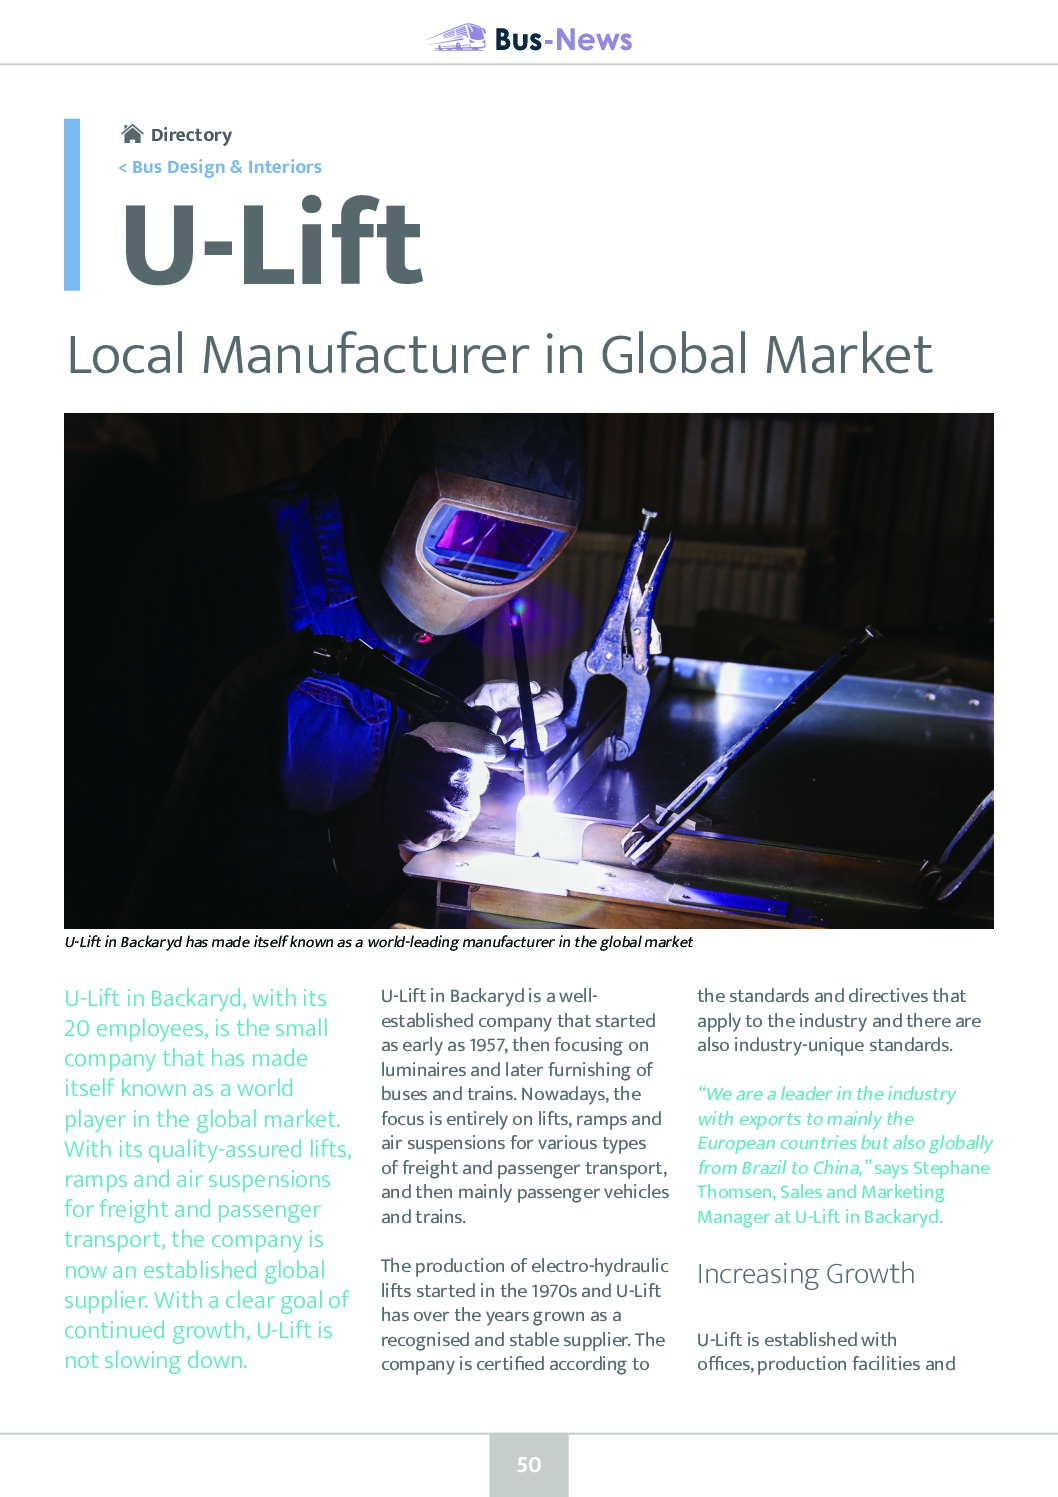 U-Lift: Local Manufacturer in Global Market